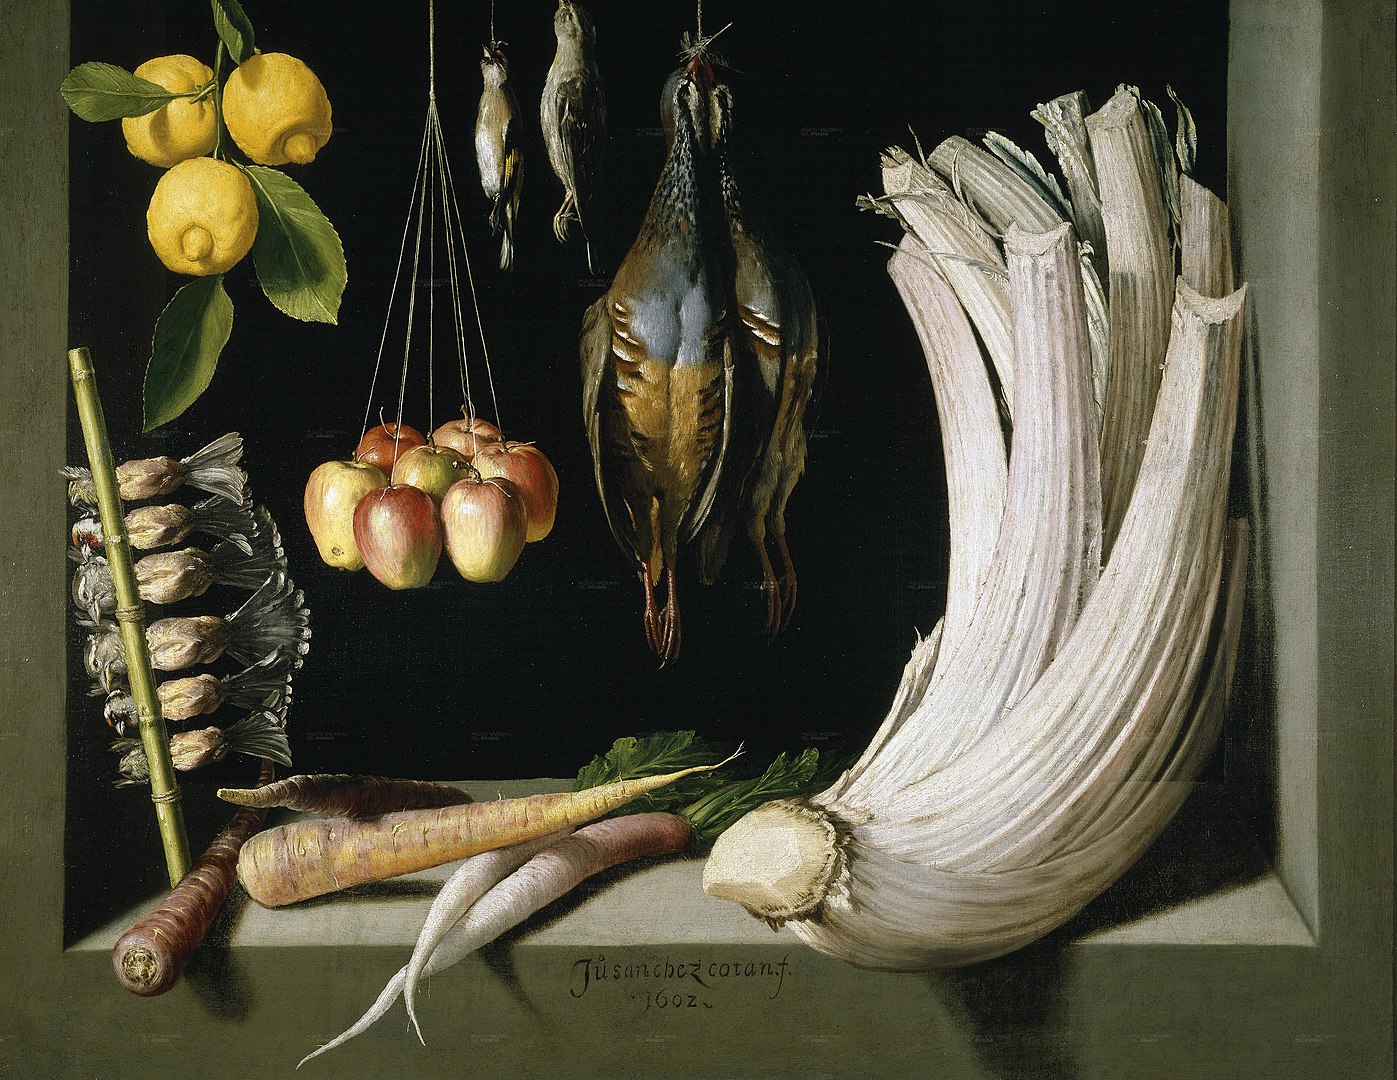 『狩猟の獲物、野菜と果物のある静物』 フアン・サンチェス・コタン 【1602】